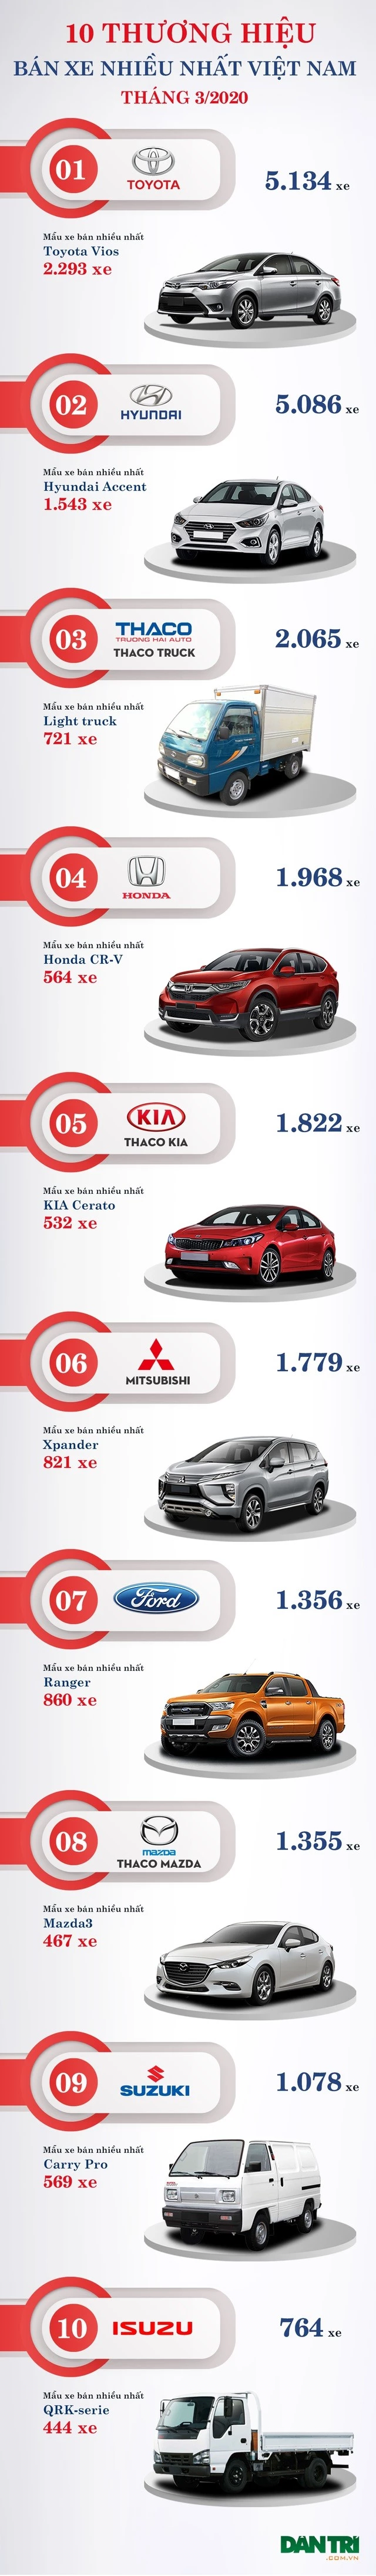 10 thương hiệu bán nhiều xe nhất Việt Nam tháng 3/2020 - 2